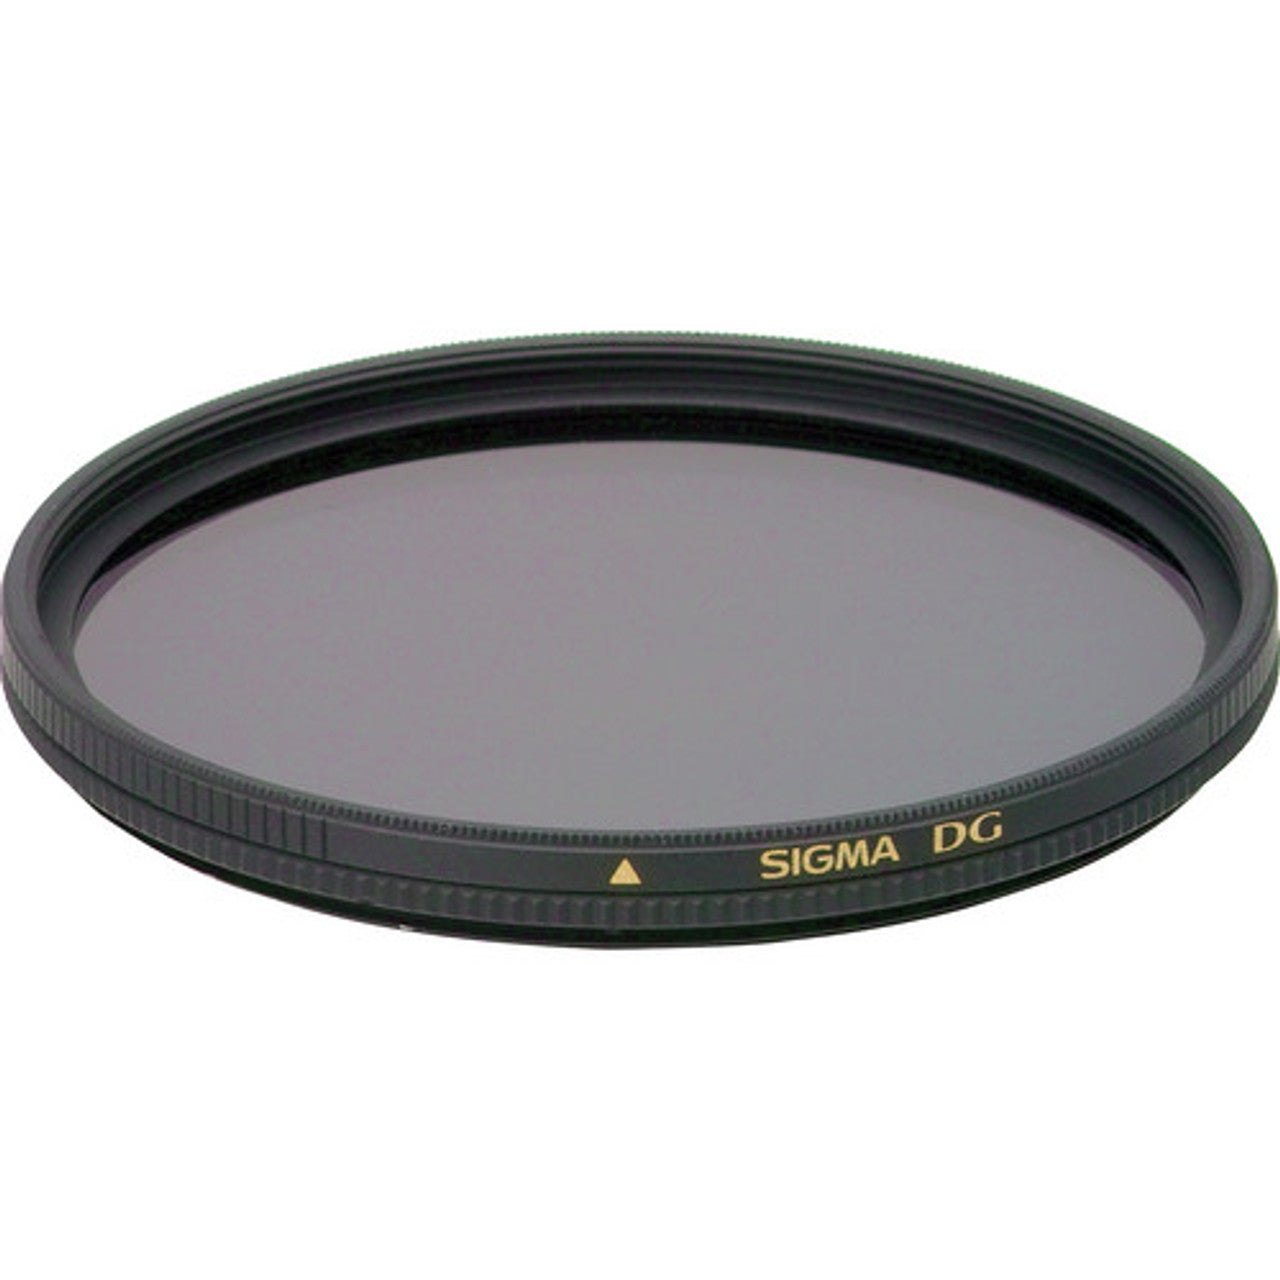 Filtre de polarisation circulaire Sigma DG - 86 mm